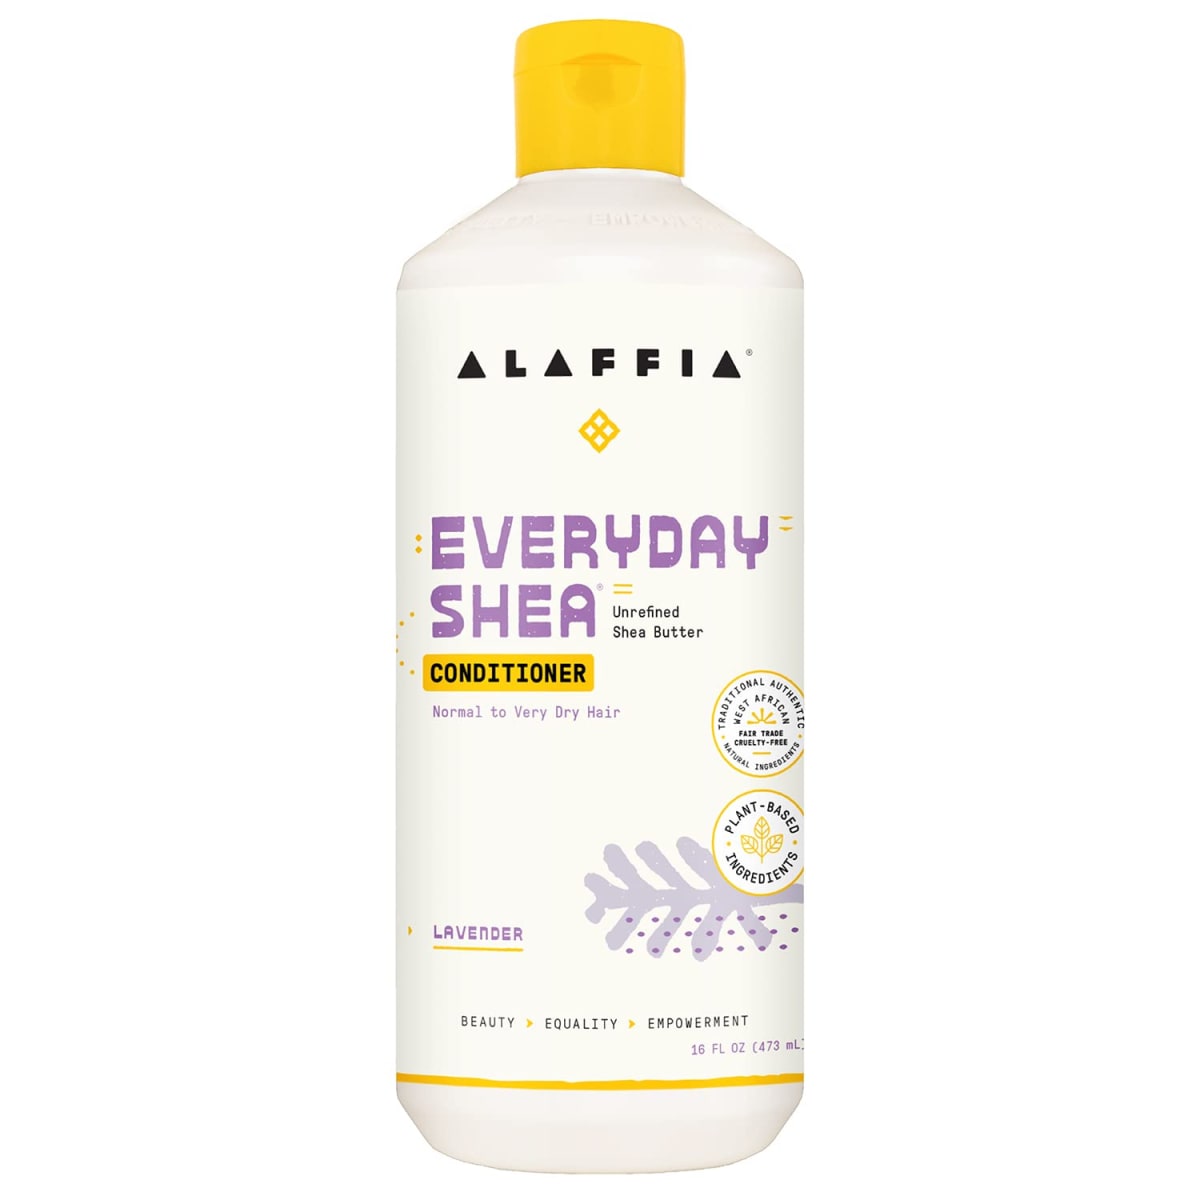 Alaffia - Everyday Shea Conditioner